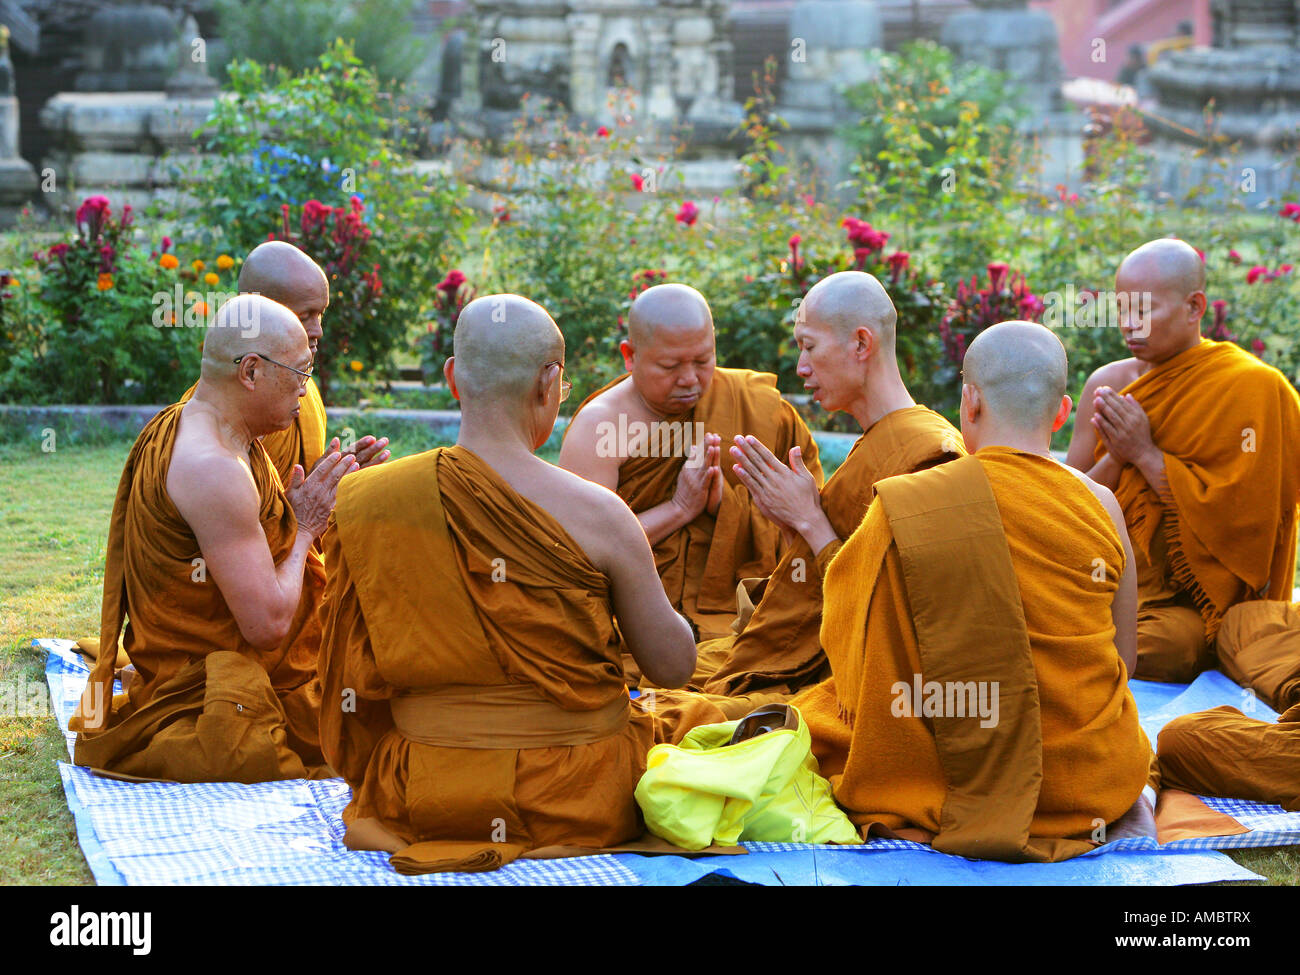 L'Inde, Bodhgaya : moines bouddhistes priant dans le jardin de Temple de la Mahabodhi, le lieu de l'Eveil du Bouddha Banque D'Images